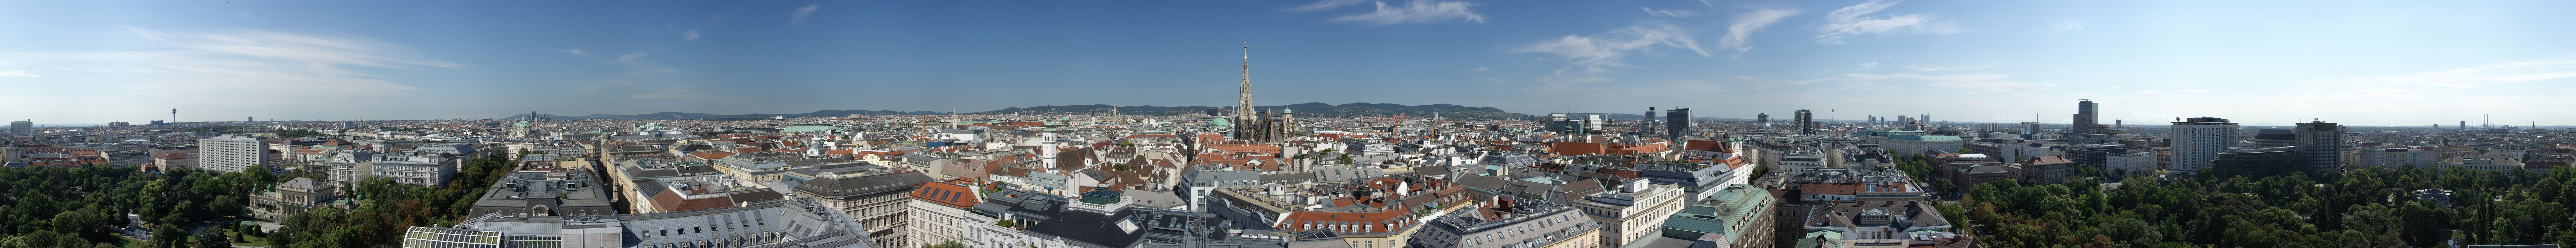 Panorama über die Stadt Wien